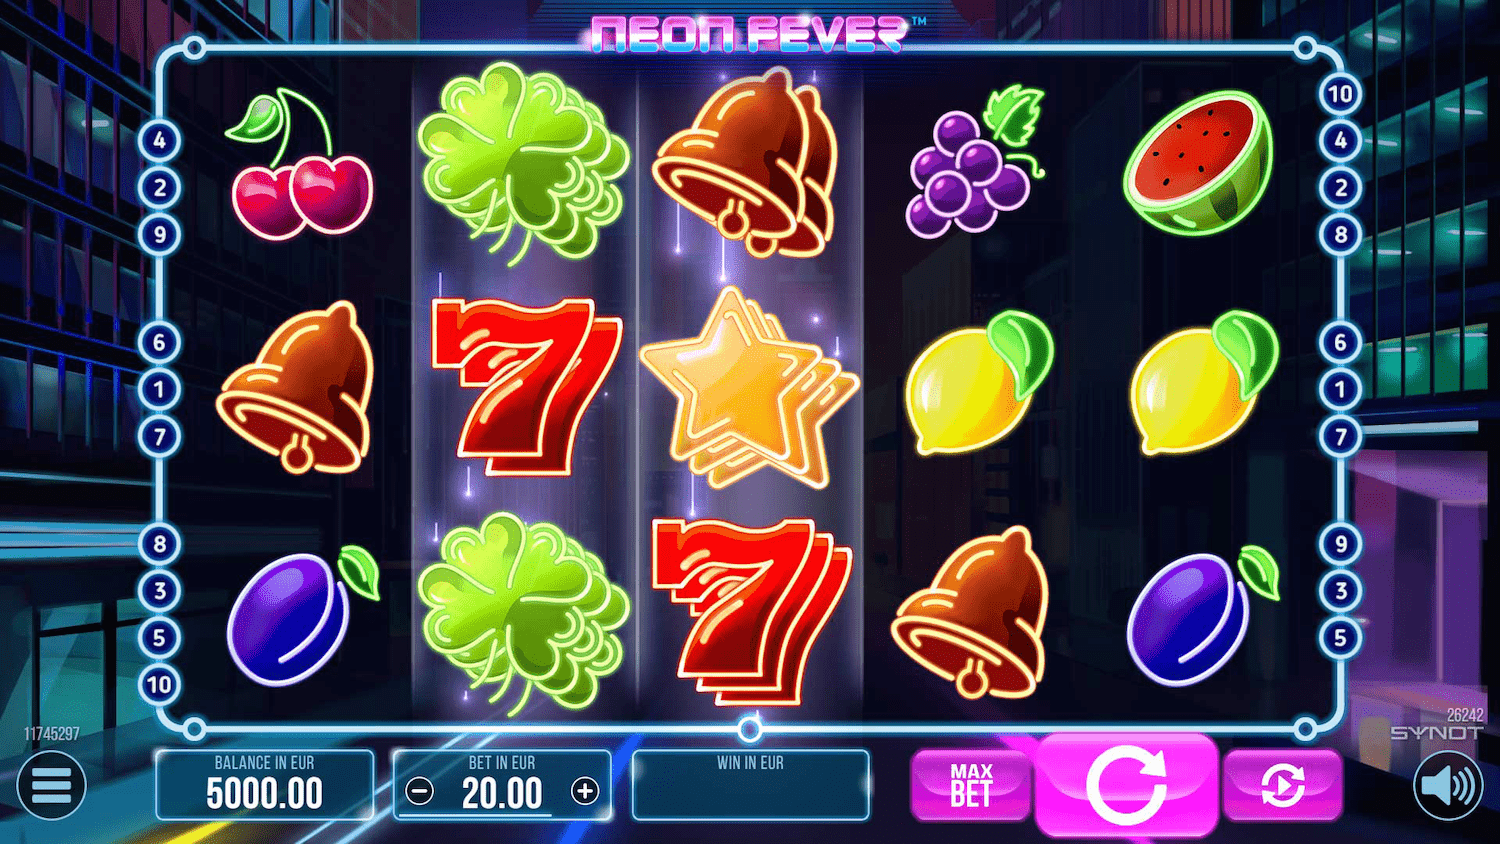 Neon Fever automat od SYNOT Games - ukážka valcov